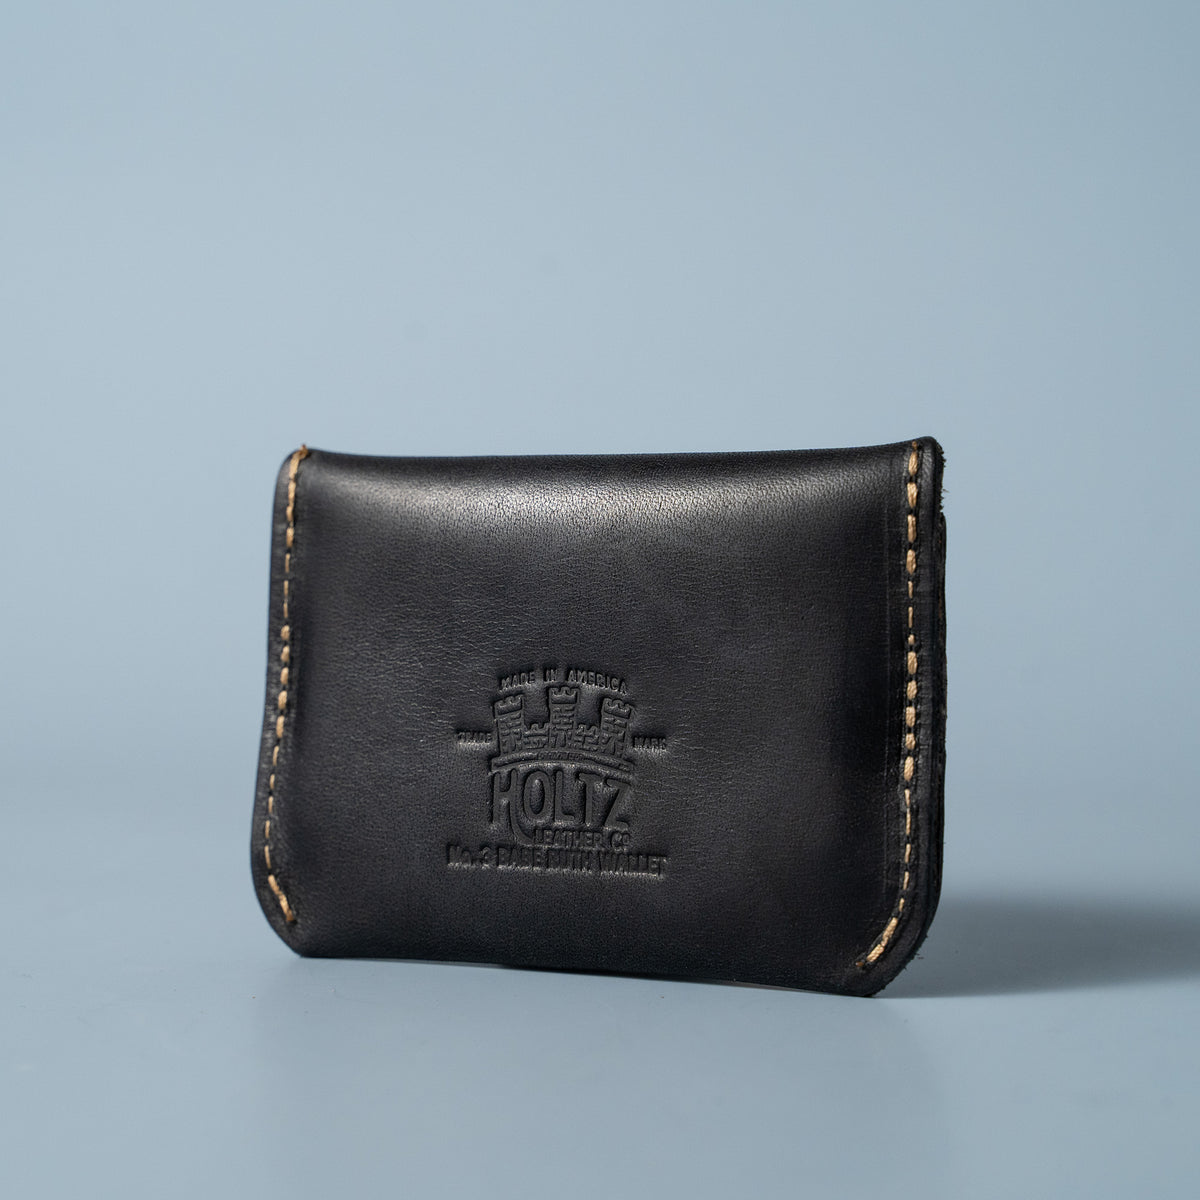 Mens Wallet Black/Blue Genuine Supreme Leather Bifold Handmade Card Holder  Purse